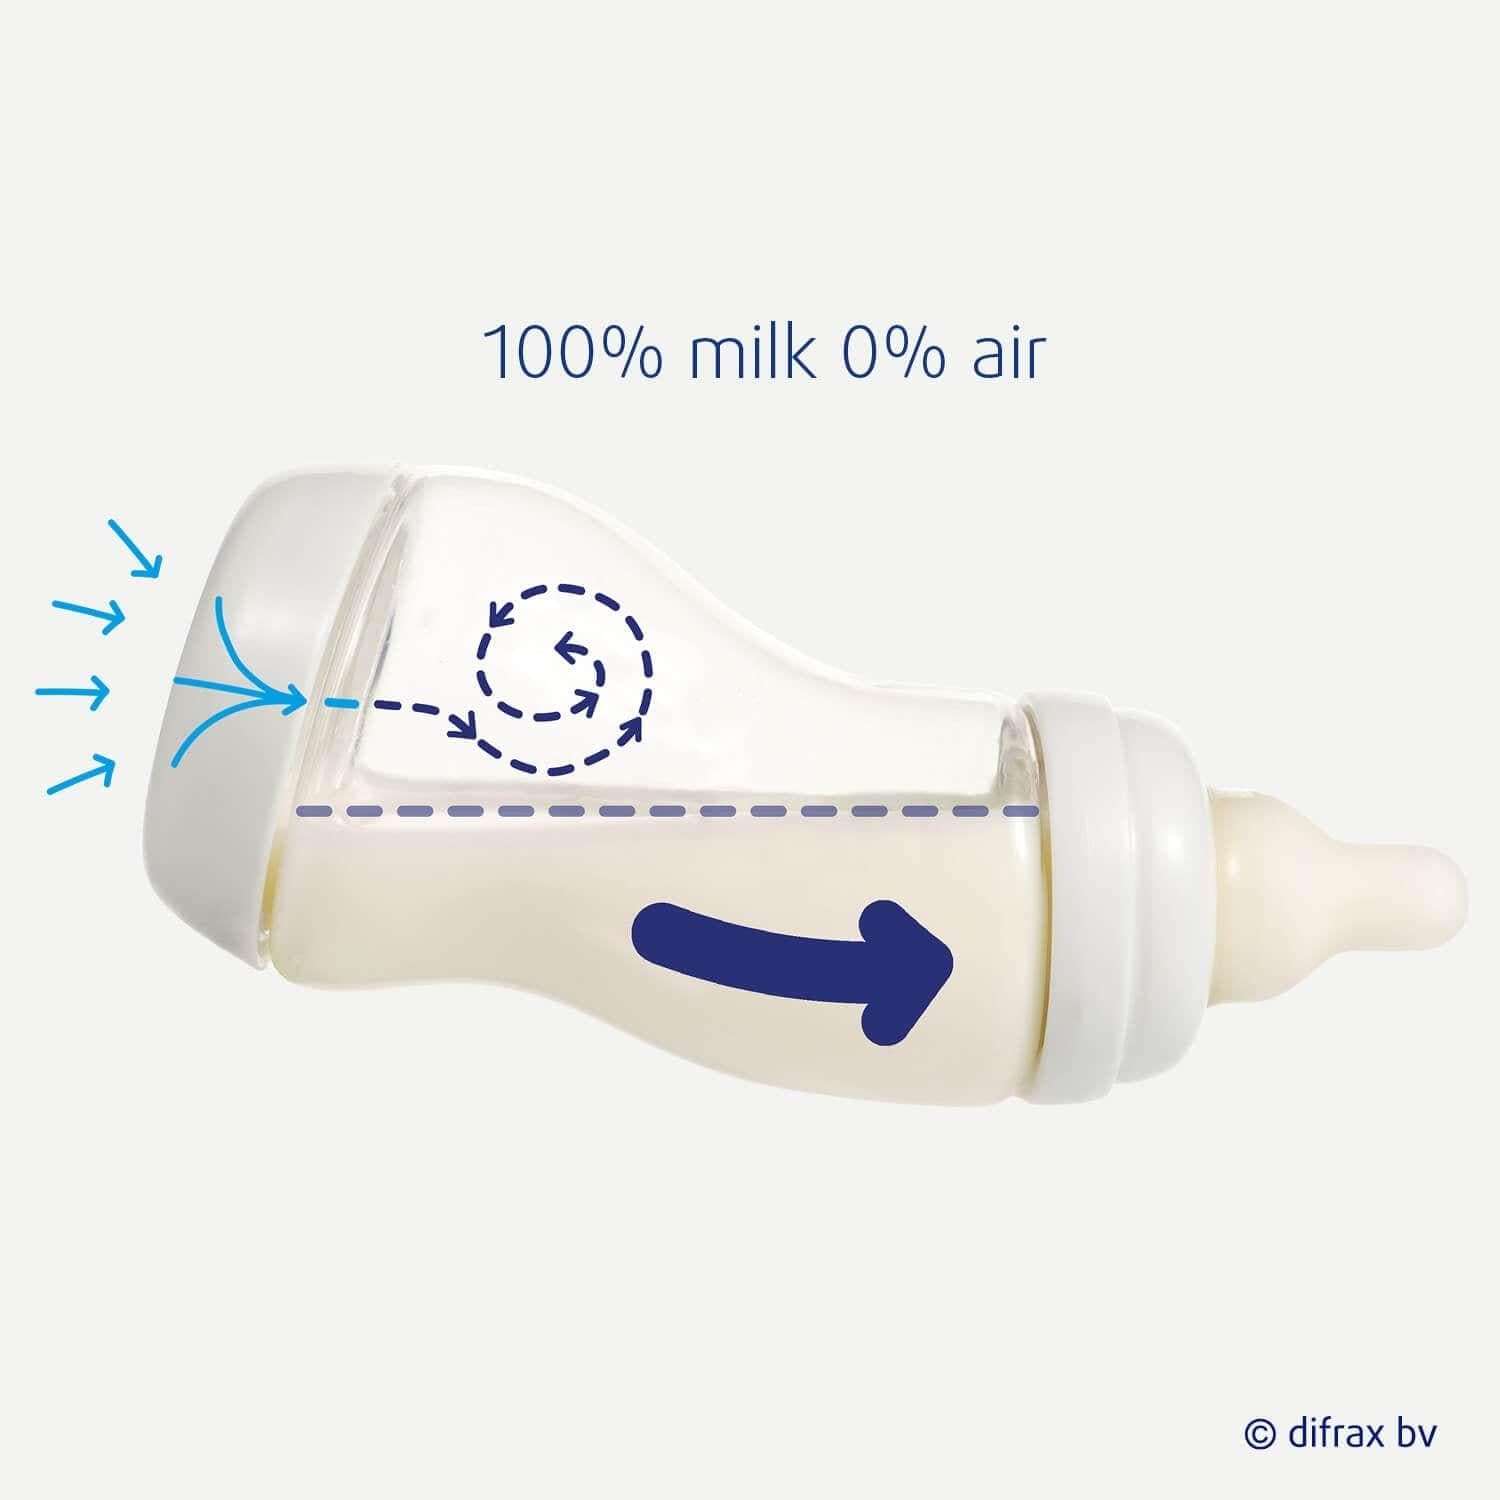 100% milk, 0% air